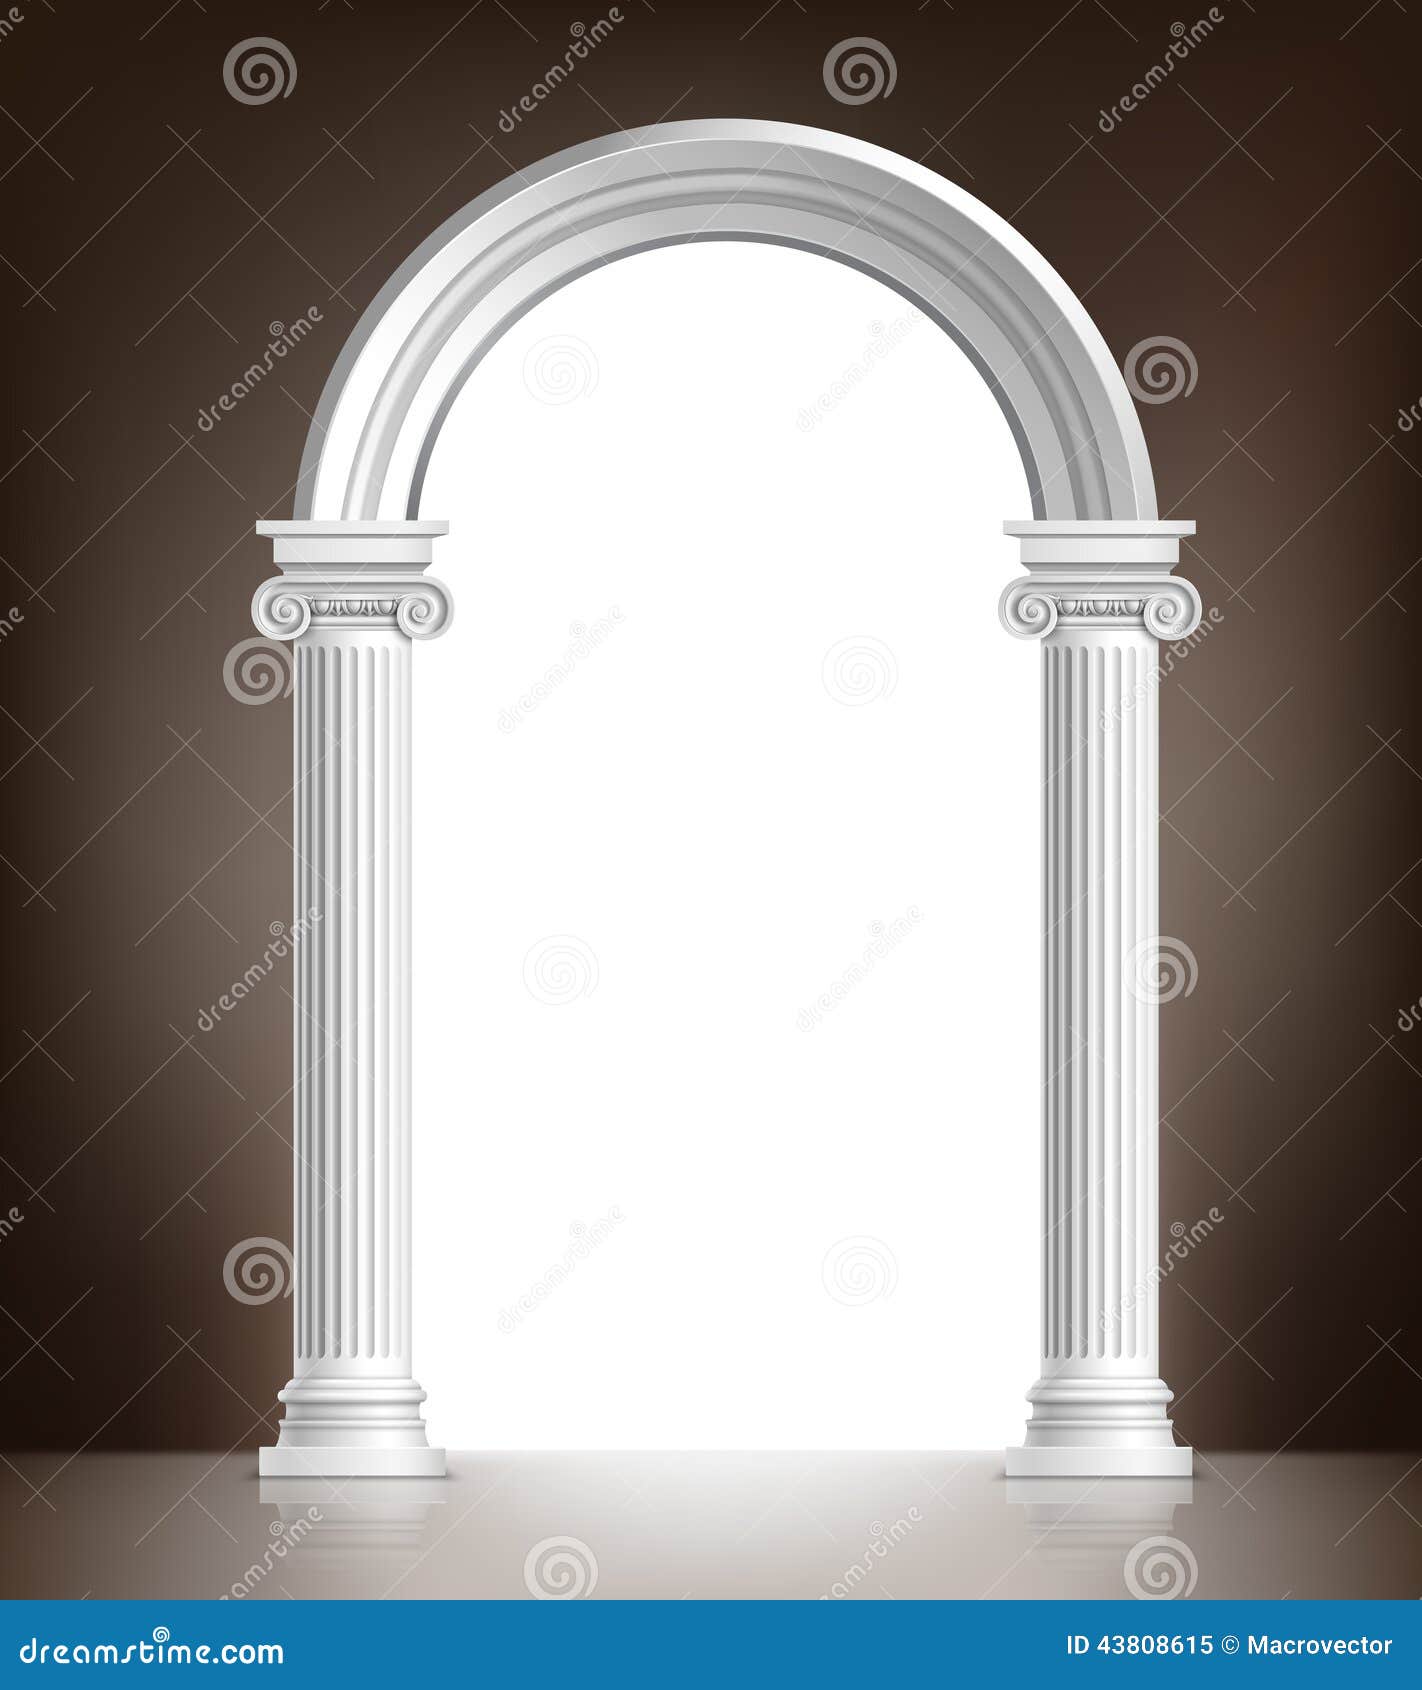 realistic white arch